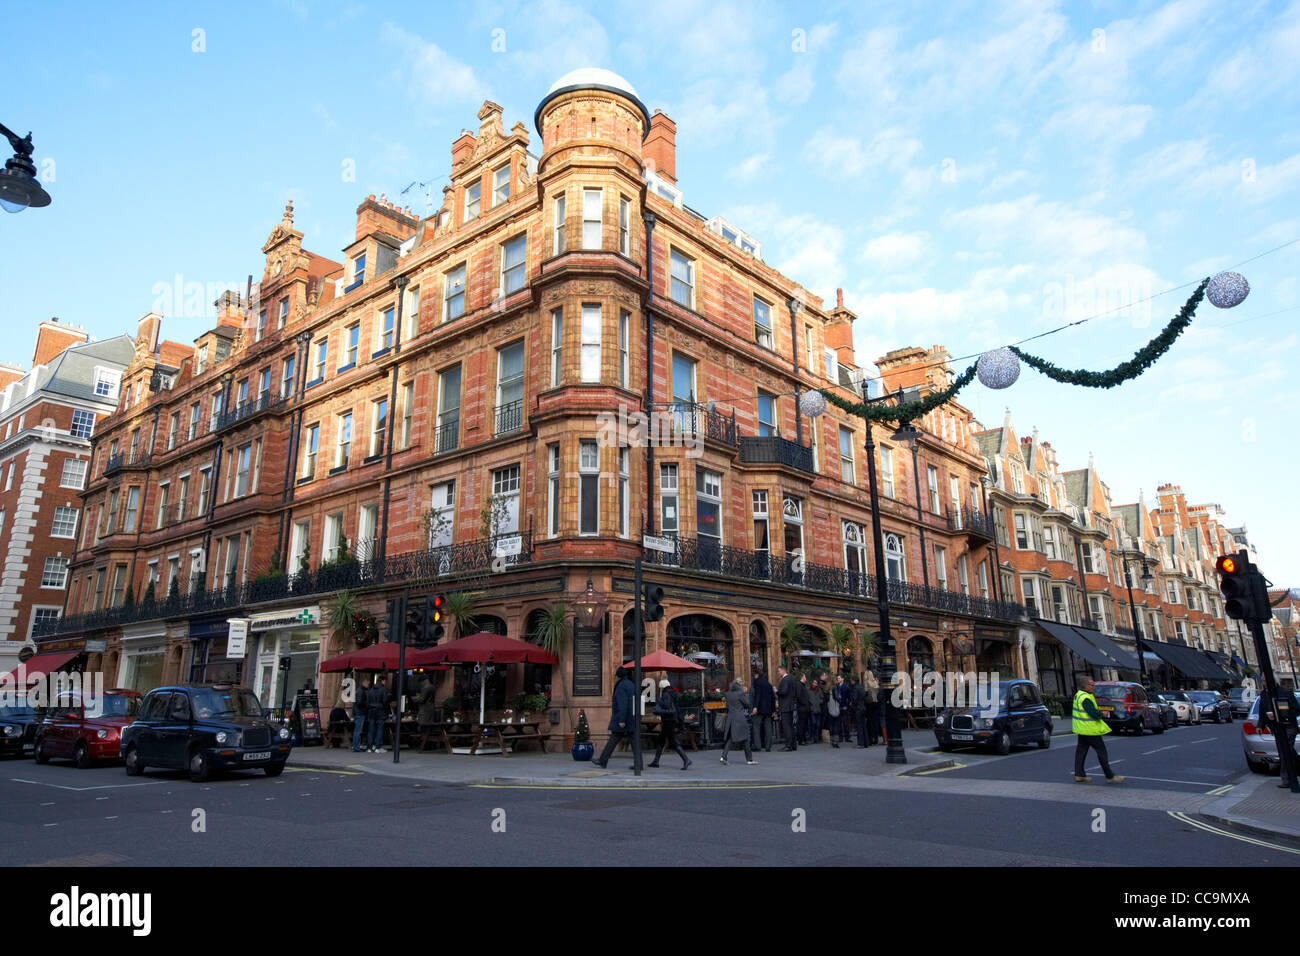 Des boutiques et restaurants au coin de South Audley Street et de mount st mayfair Londres Angleterre Royaume-Uni Royaume-Uni Banque D'Images